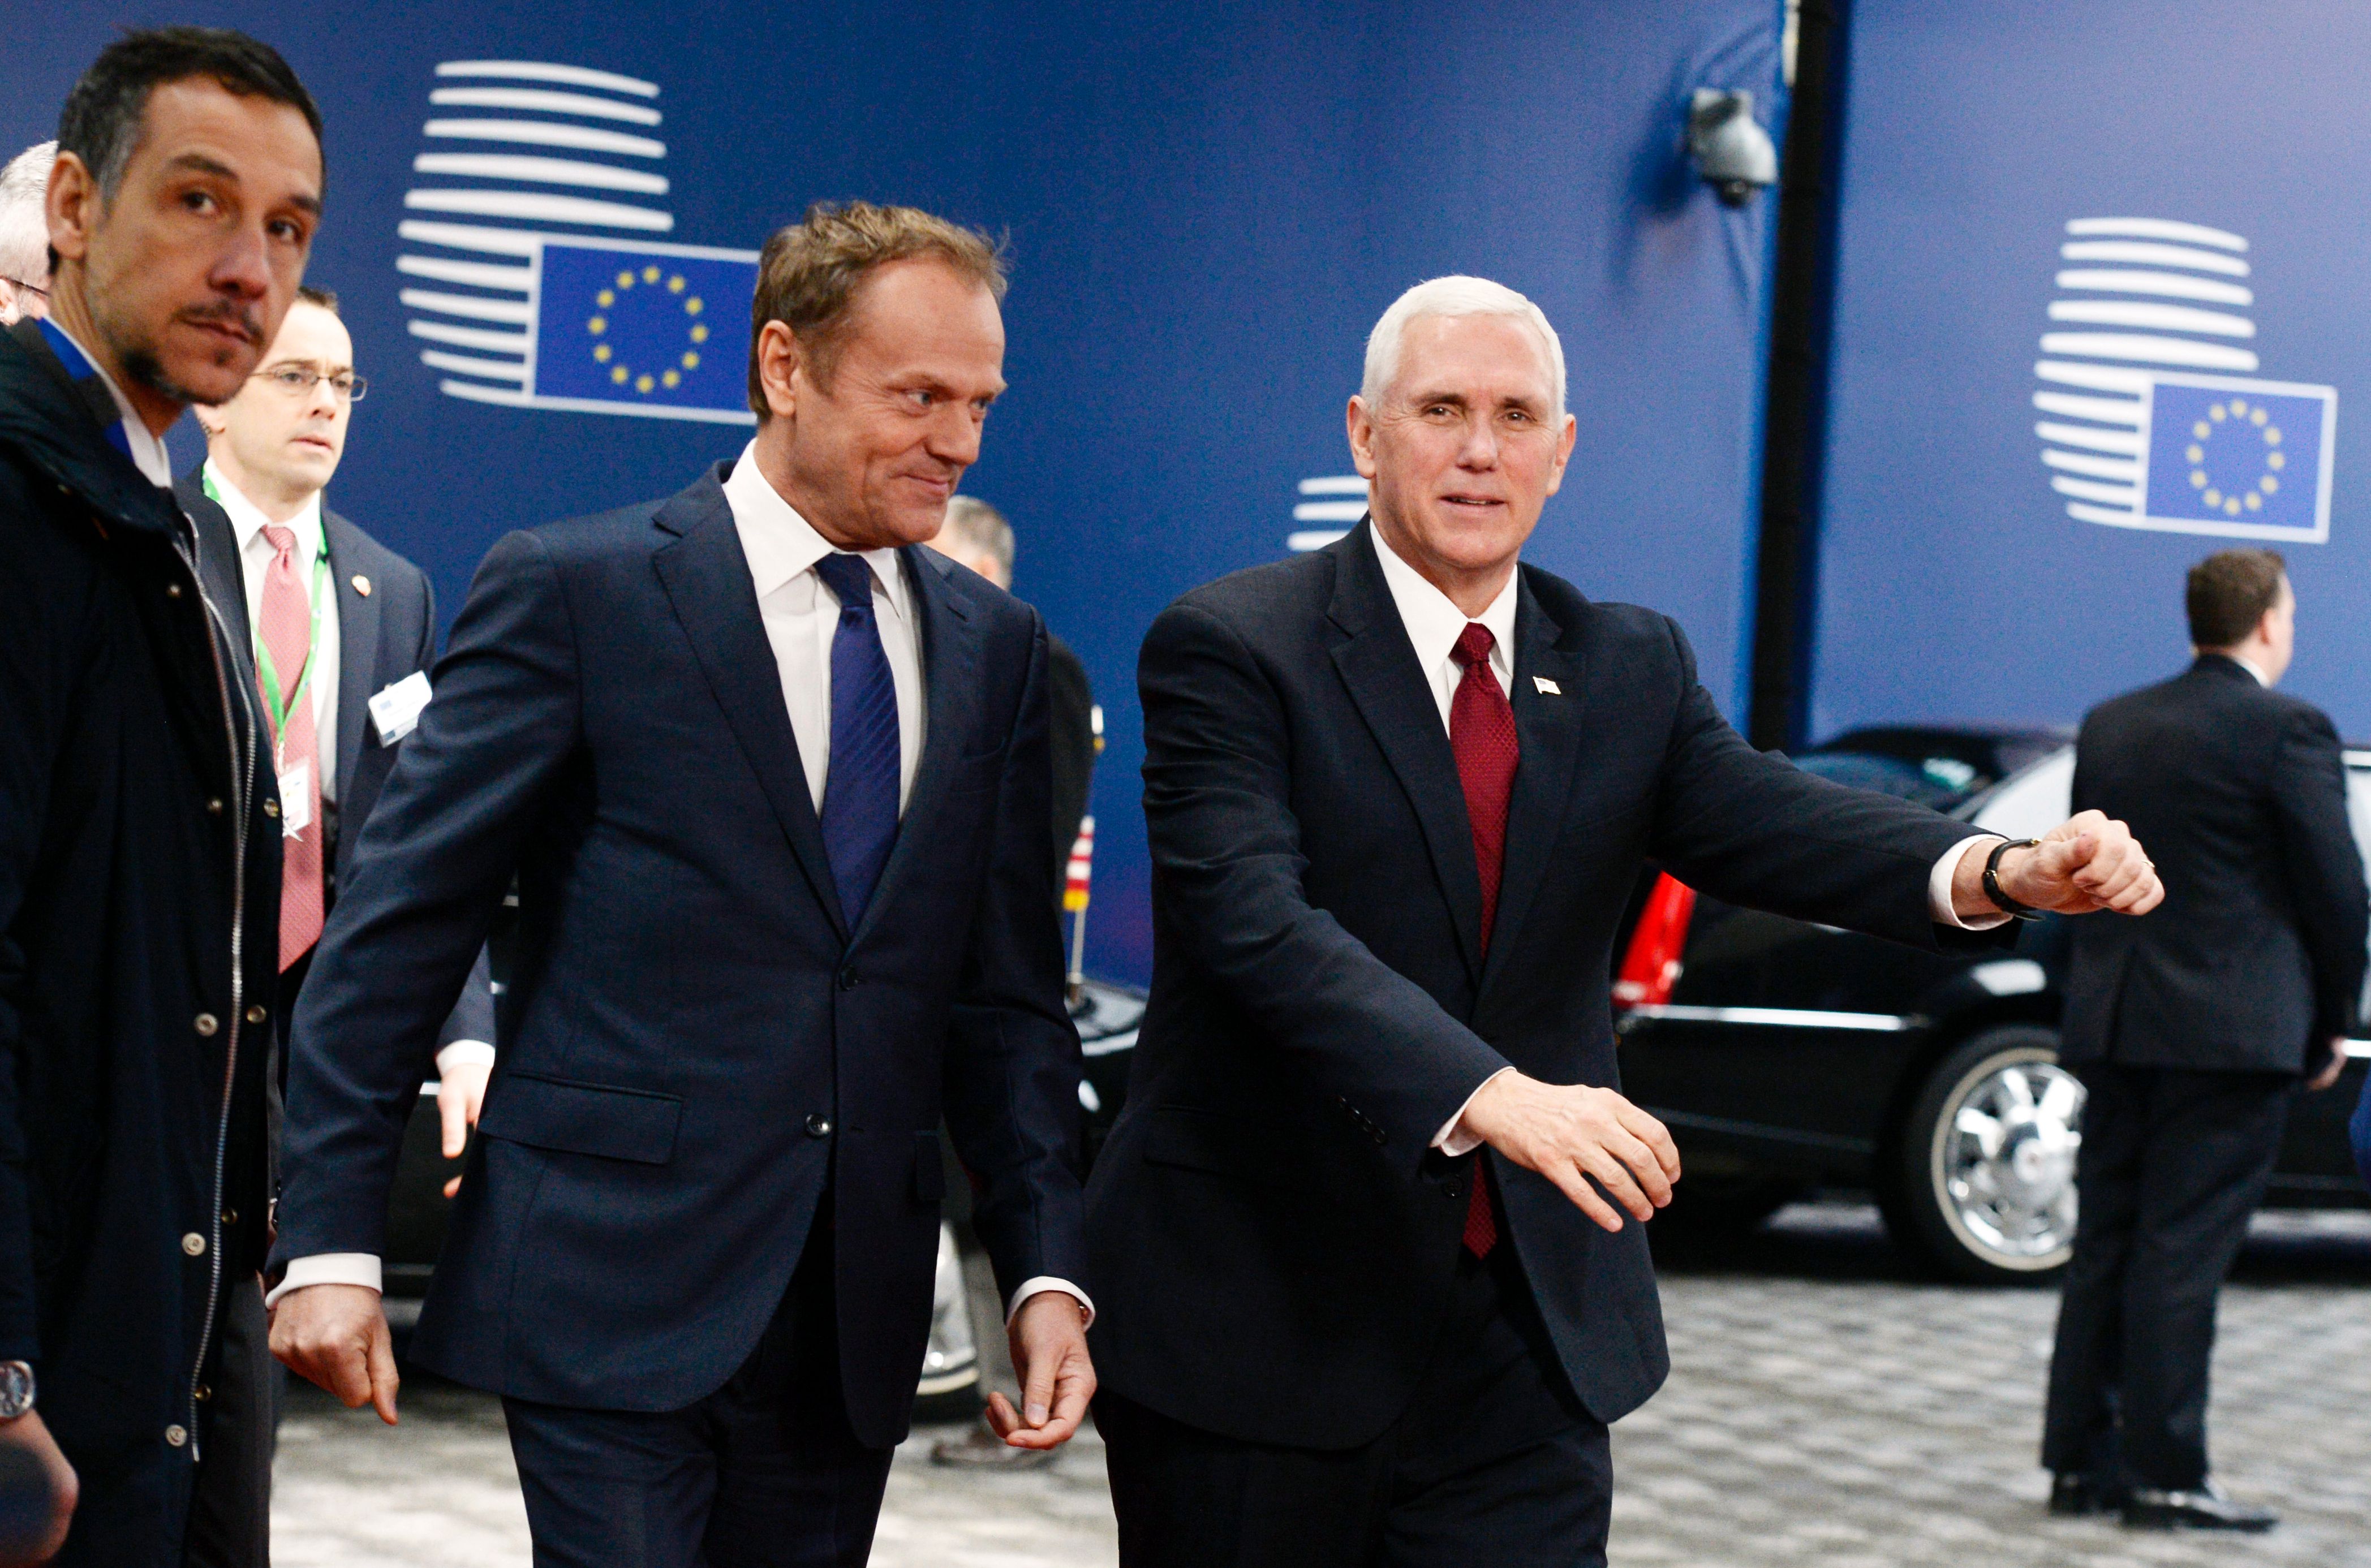 El vicepresidente estadounidense, Mike Pence (d), camina junto al presidente del Consejo Europeo, Donald Tusk antes de su reunión en Bruselas. (Crédito: THIERRY CHARLIER/AFP/Getty Images)